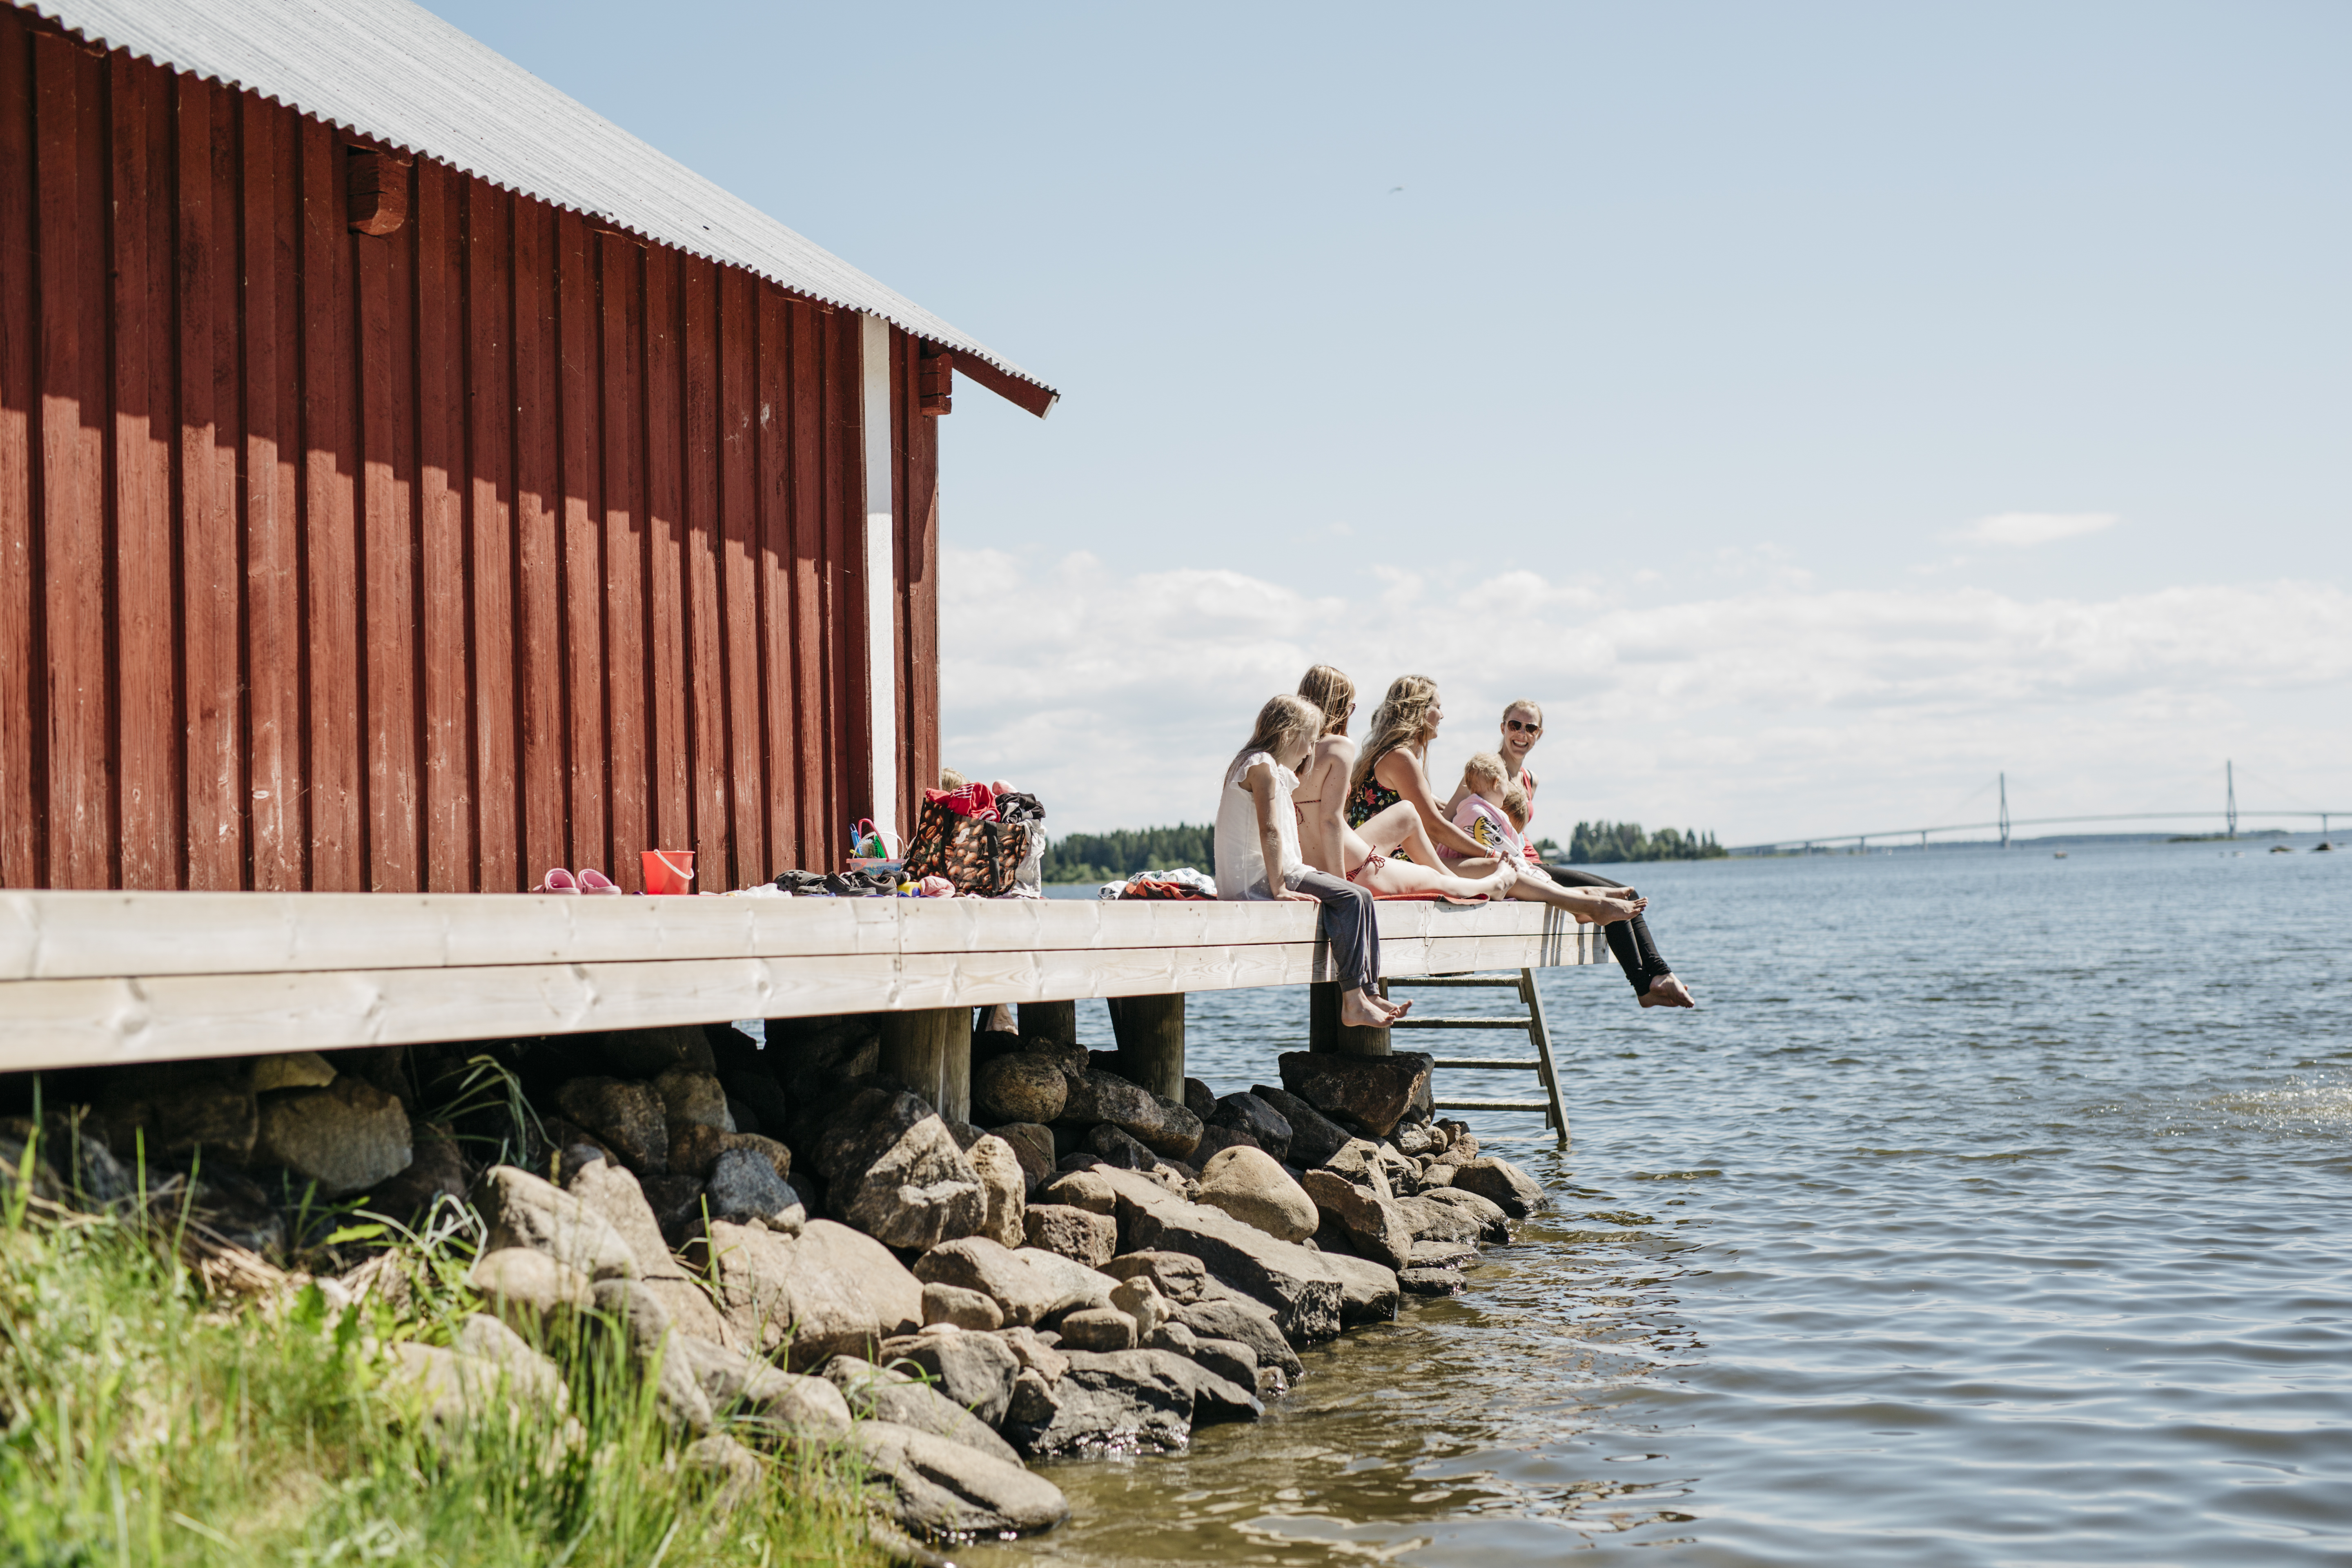 familia disfrutando de su tiempo libre en un muelle en el archipiélago de Finlandia